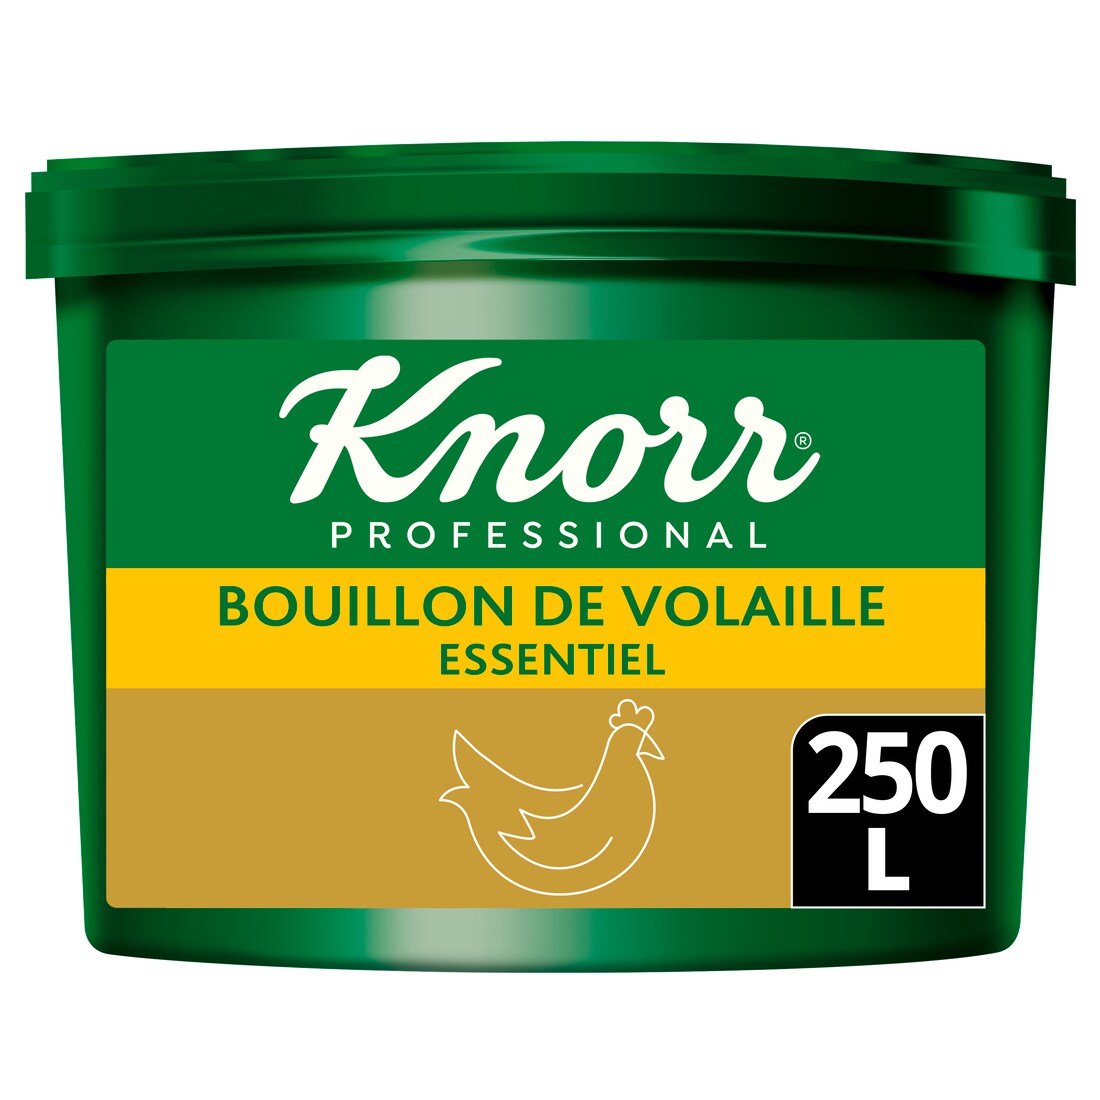 Knorr Essentiel Bouillon de Volaille 5kg jusqu'à 250L - 